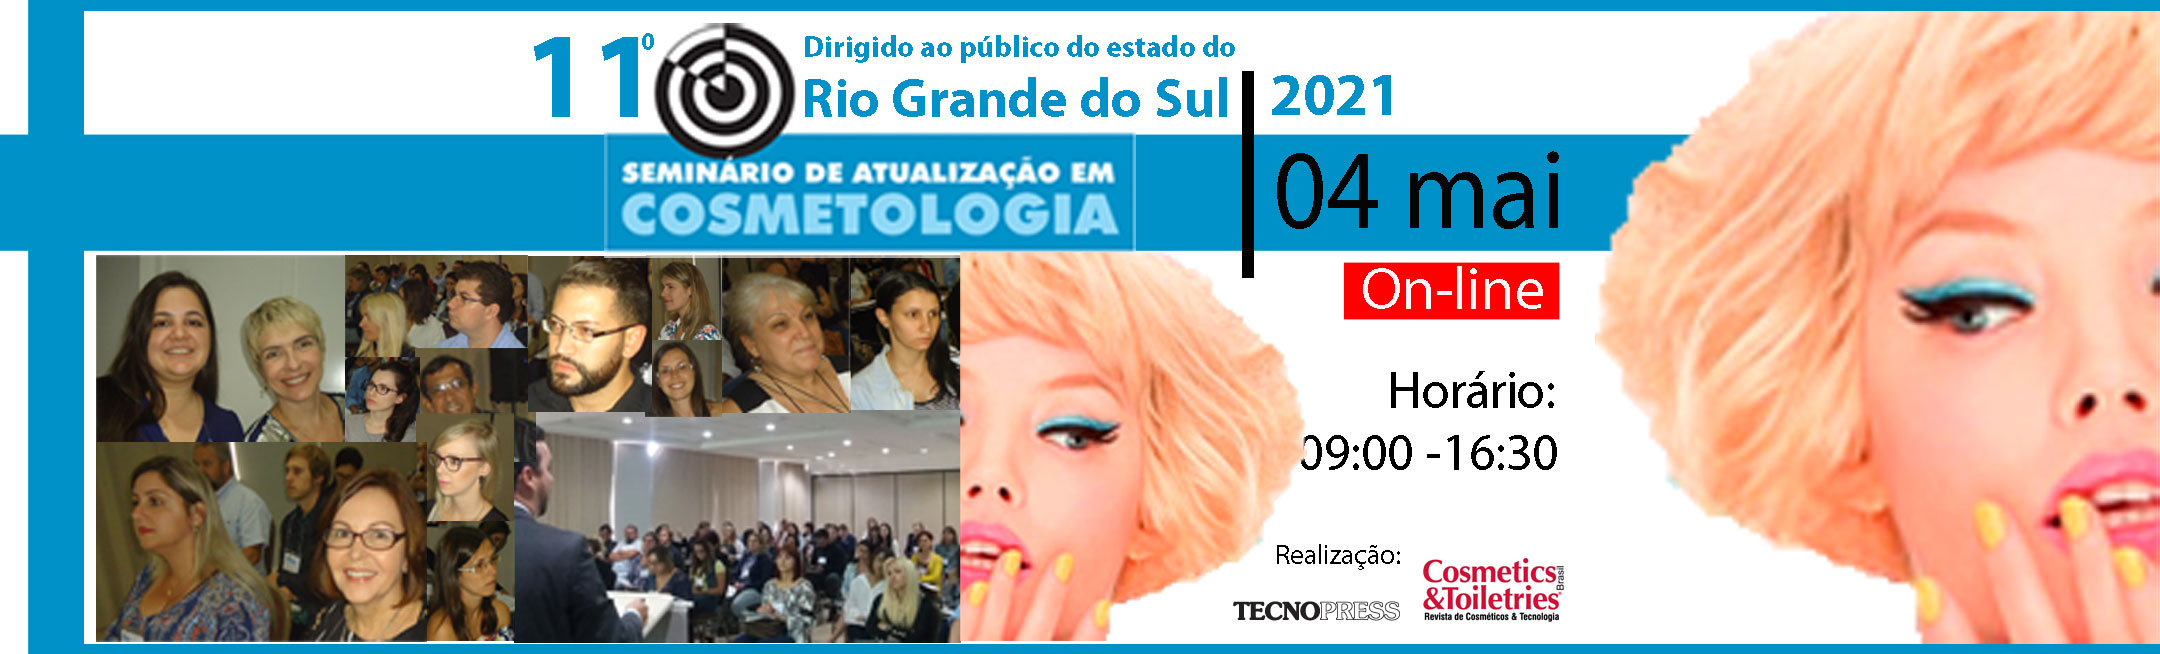 11º Seminário de Atualização em Cosmetologia do Rio Grande do Sul